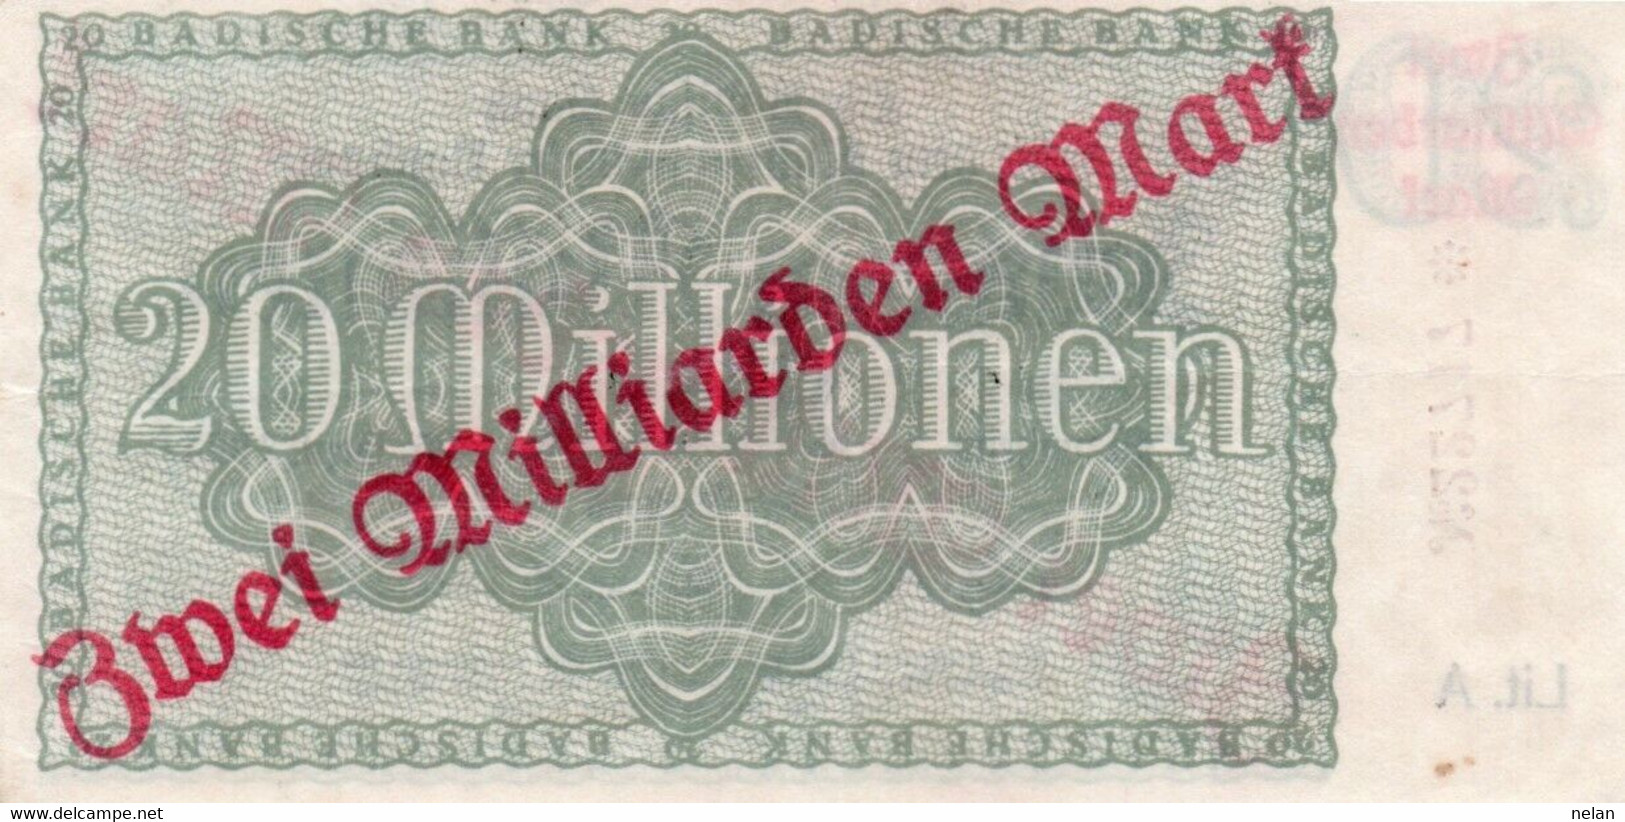 GERMANIA 2 MILLIARDEN MARK 1923 - Kel:3428d. - BADISCHE BANC - XF - Bundeskassenschein